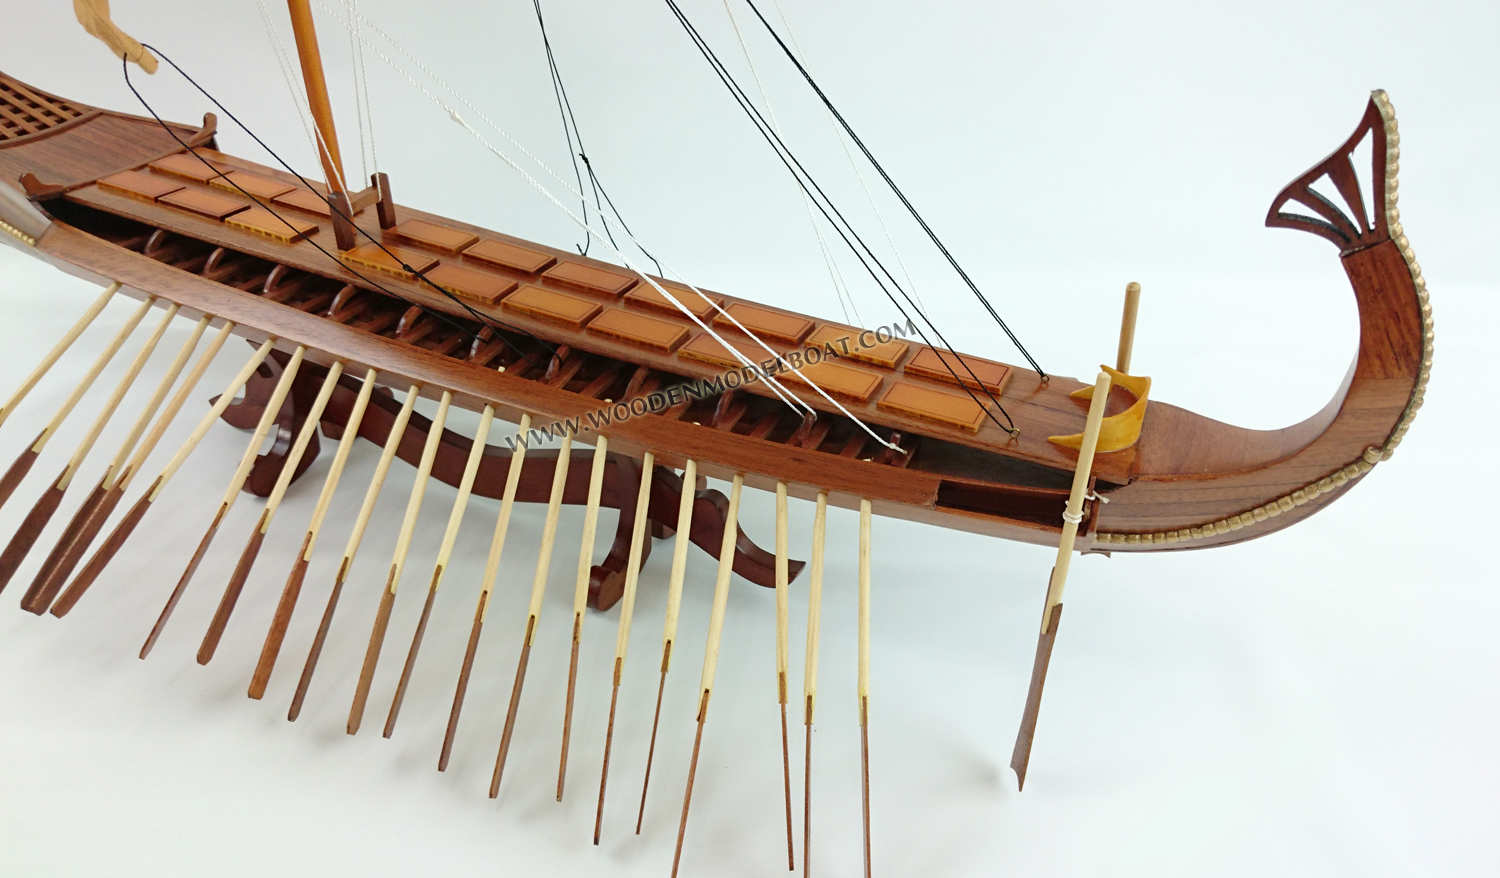 Bireme model boat